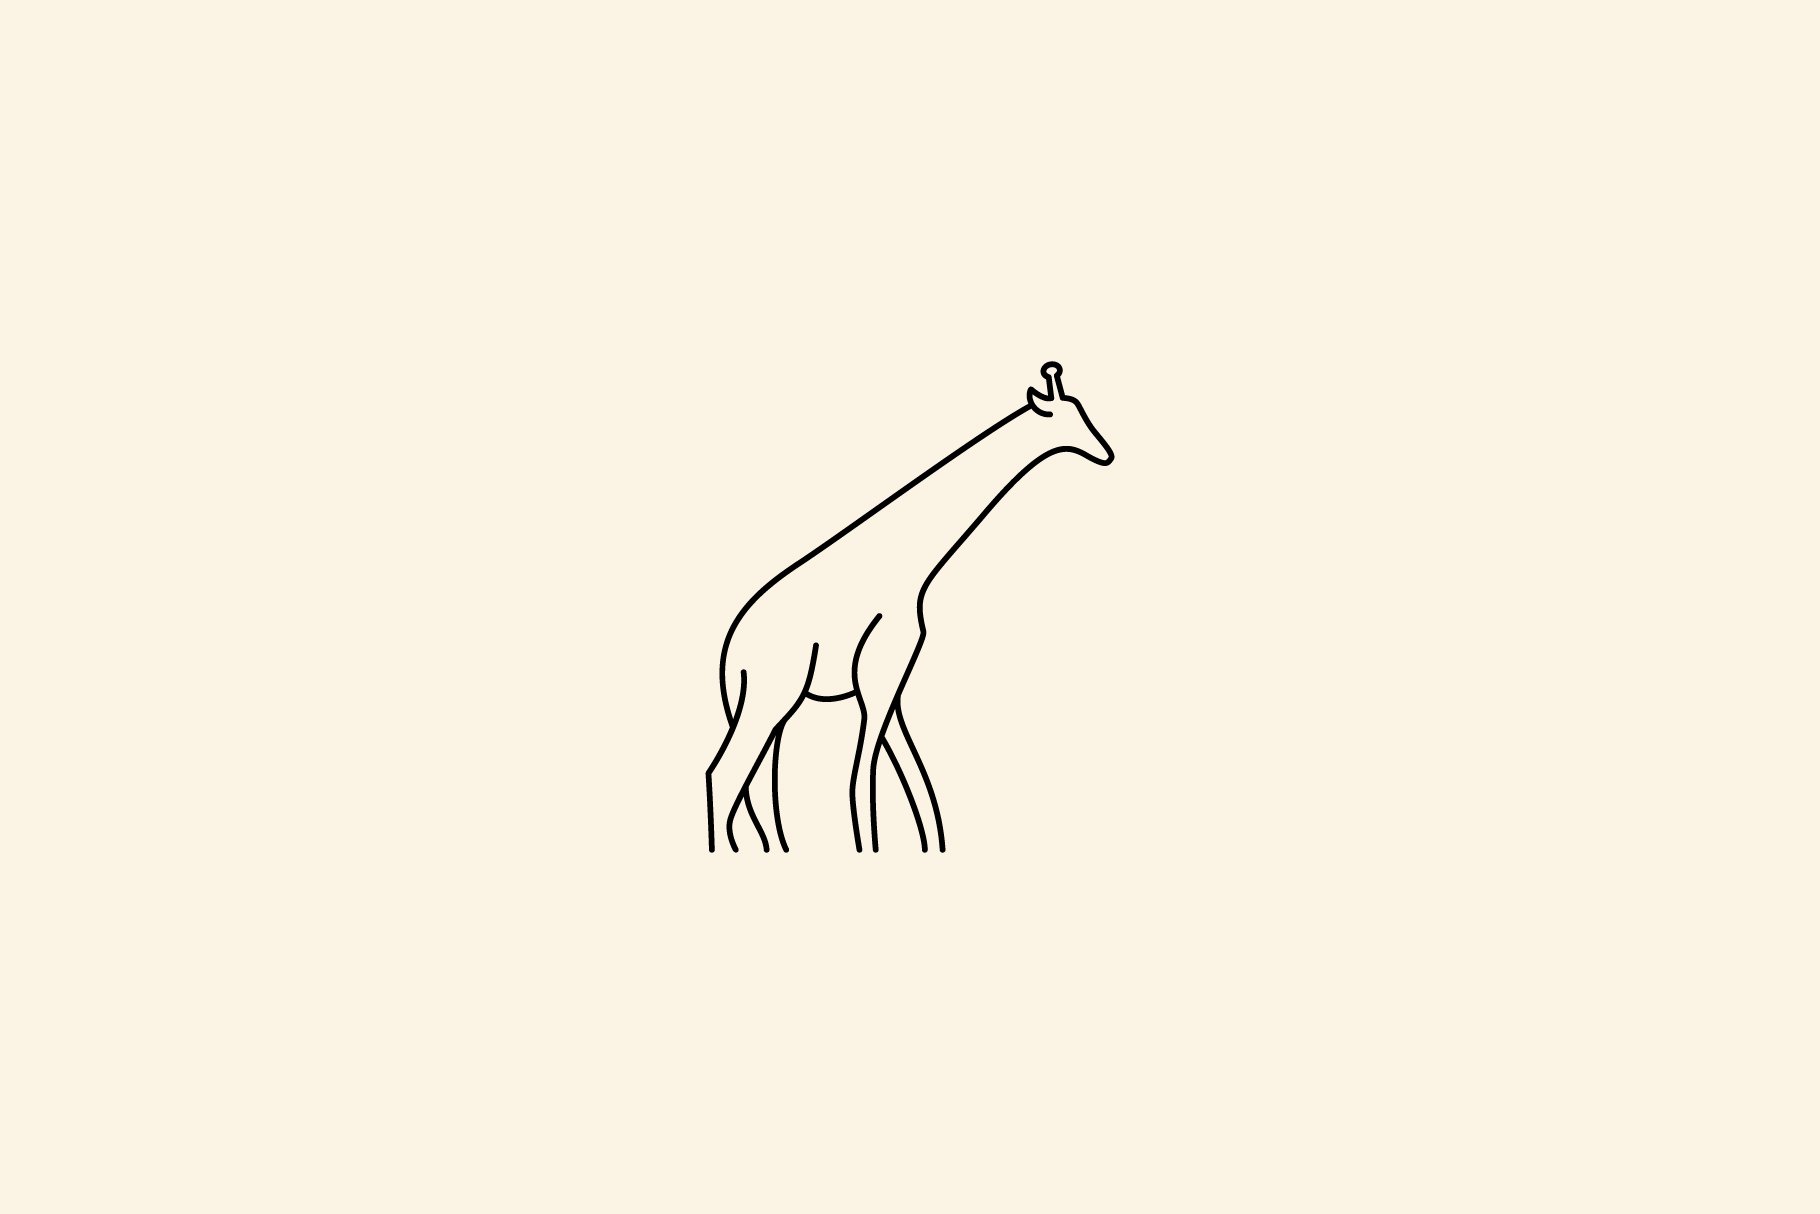 Giraffe Logo icon design vector cover image.